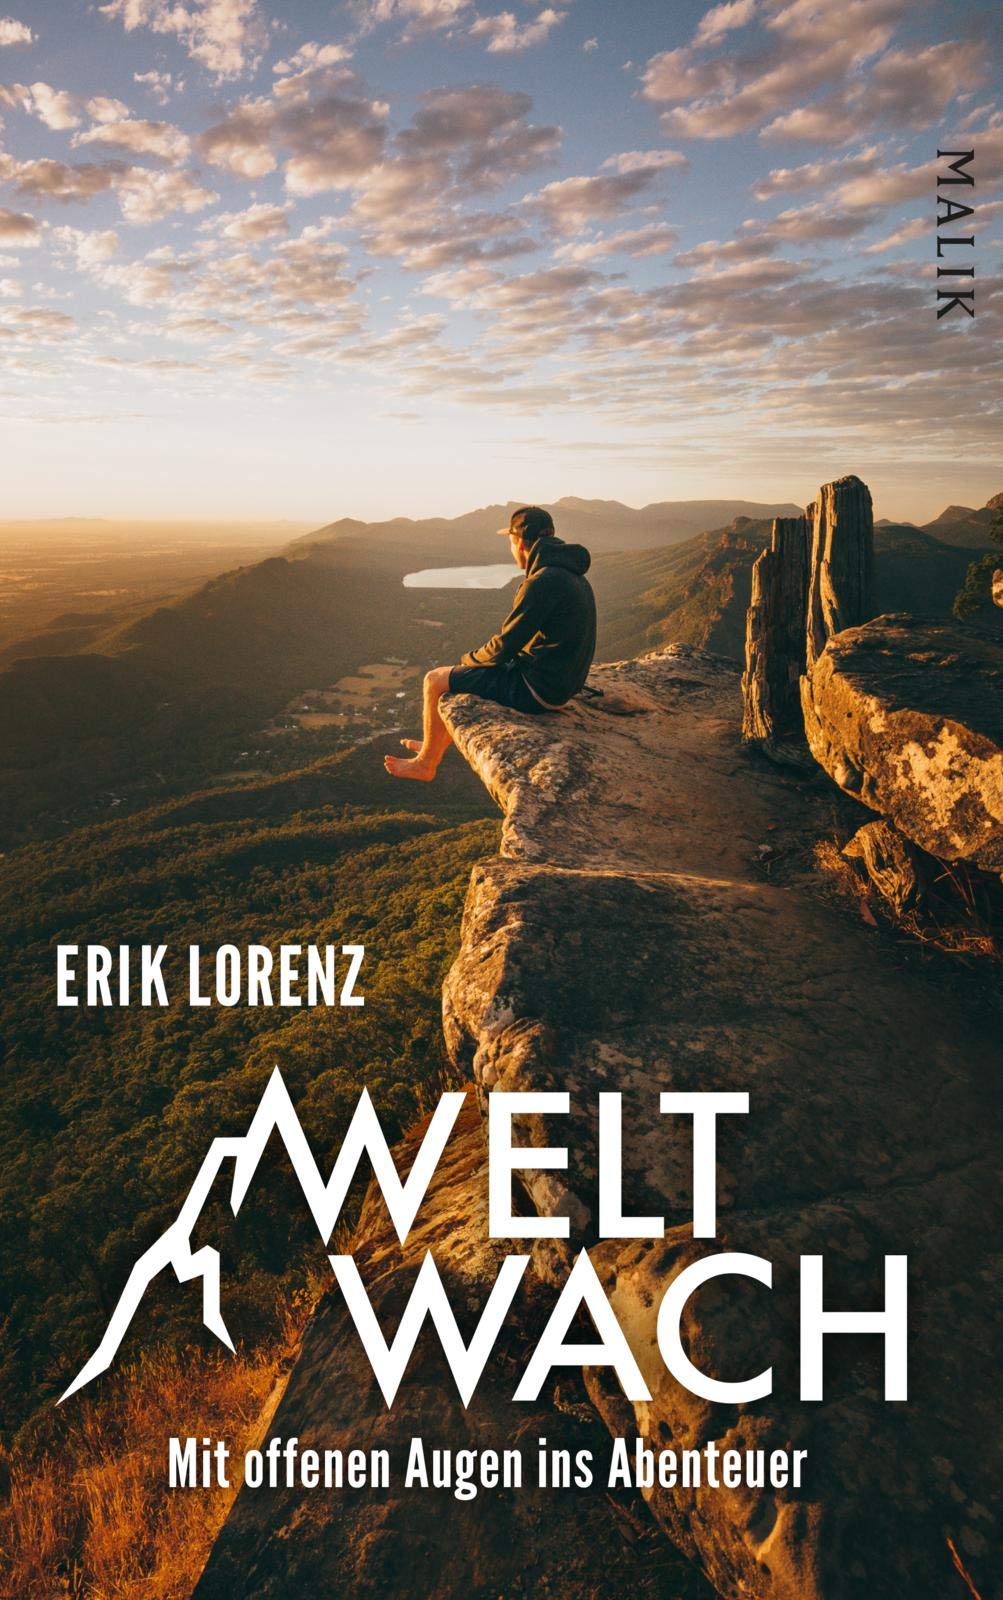 Weltwach, Autor: Erik Lorenz Verlag: MALIK